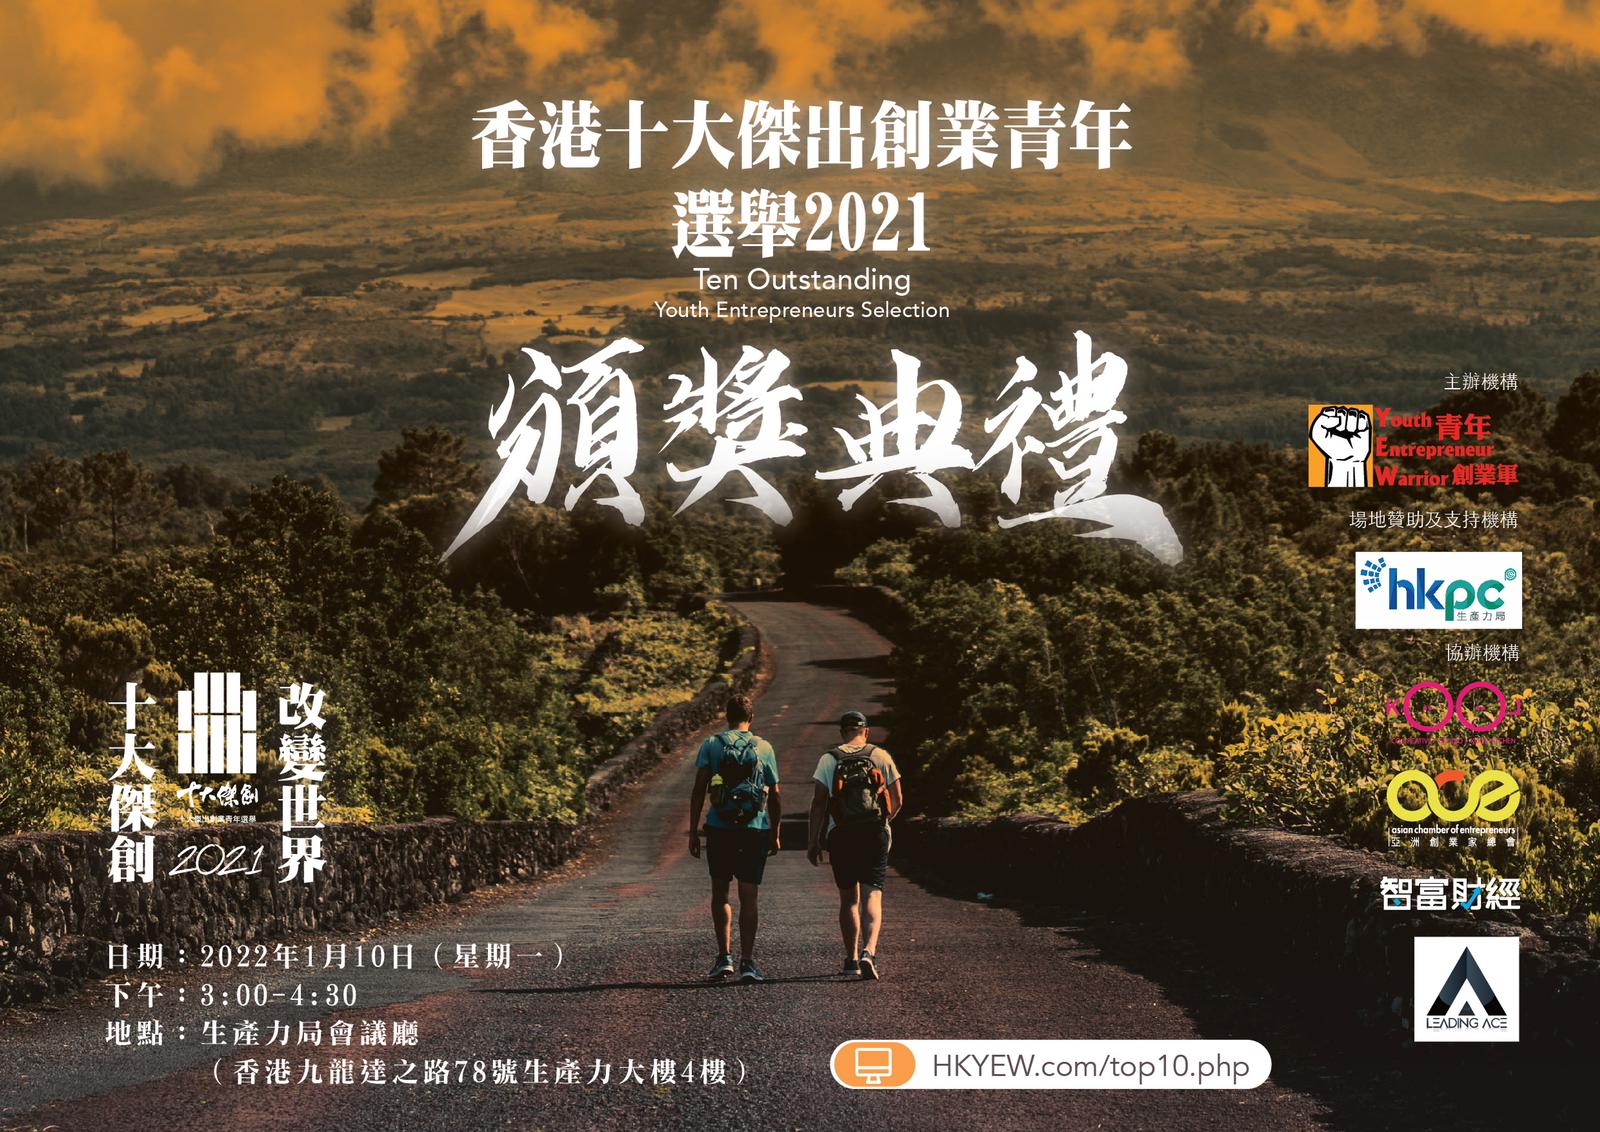 青年創業軍最新創業活動: 「香港十大傑出創業青年選舉2021」 頒獎典禮